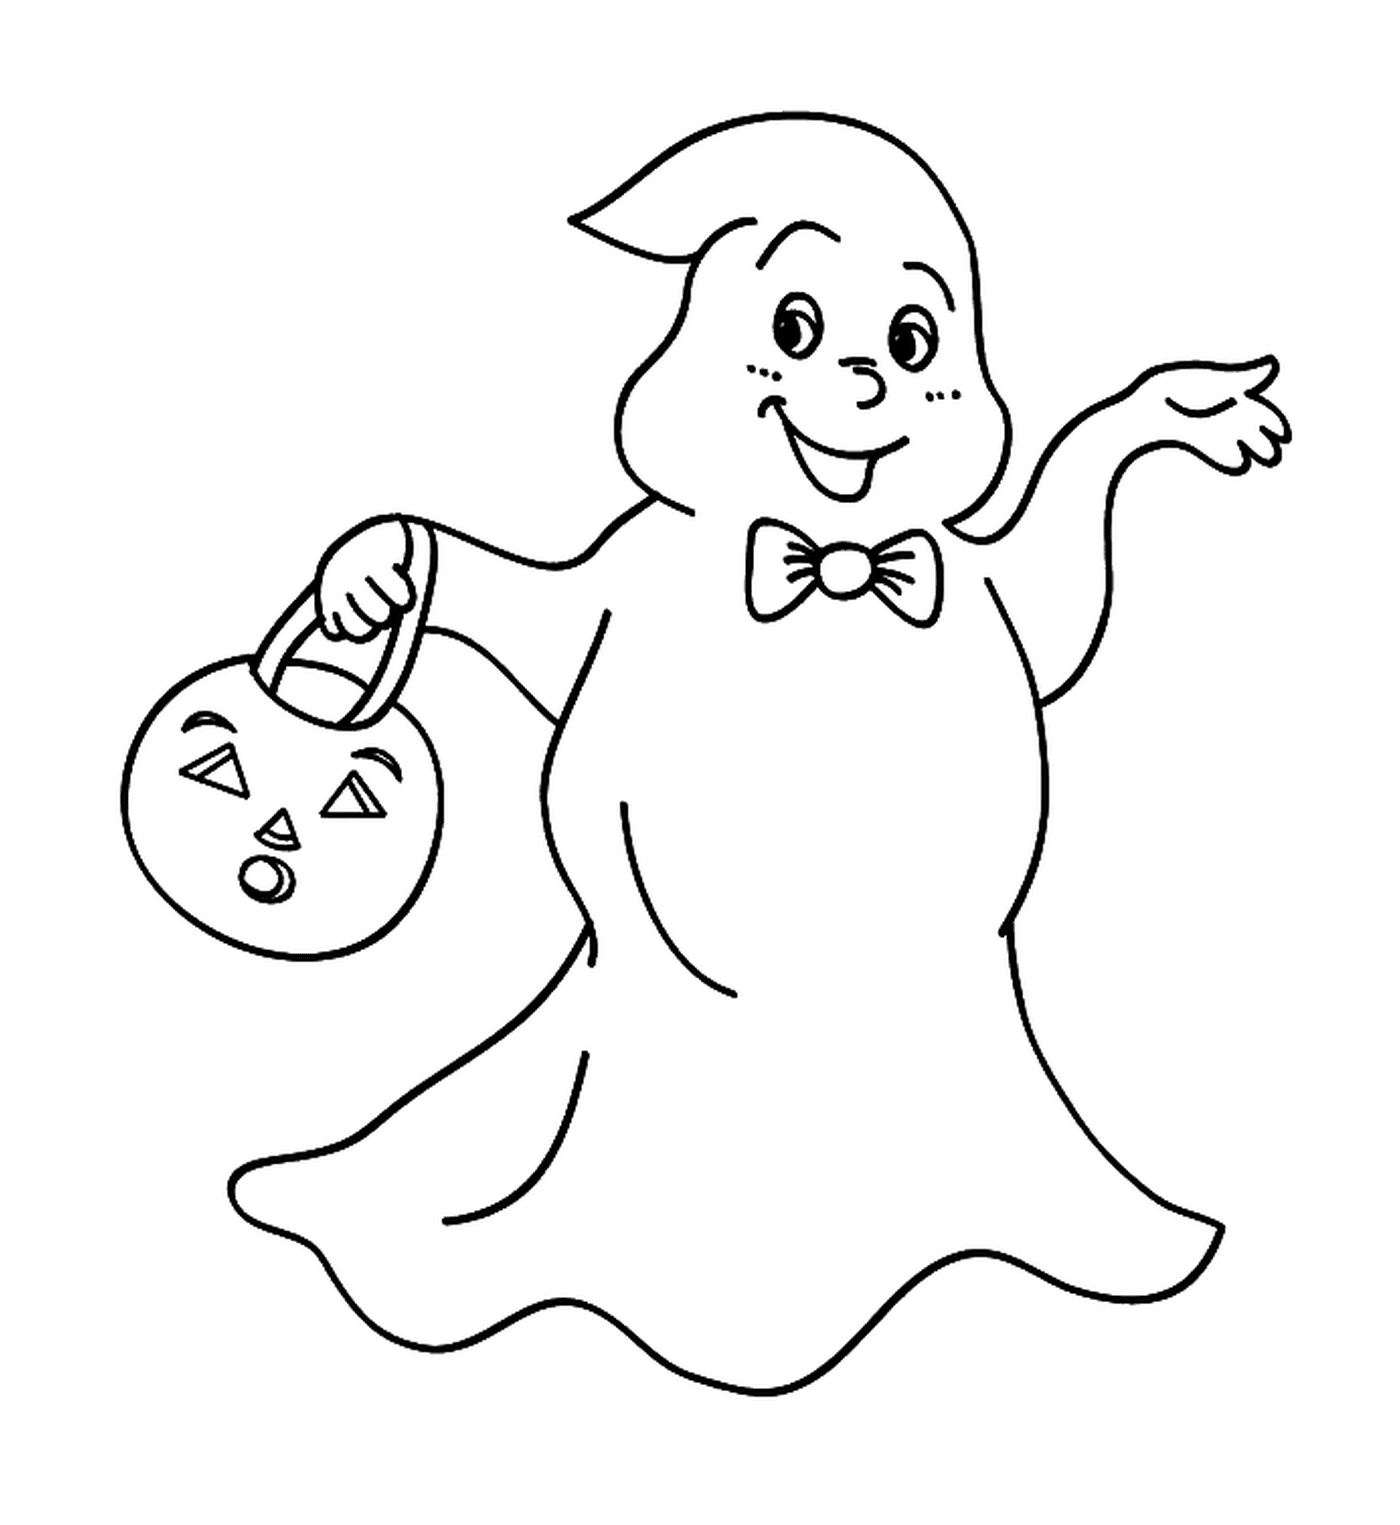  Fantasma reclamando dulces para Halloween 